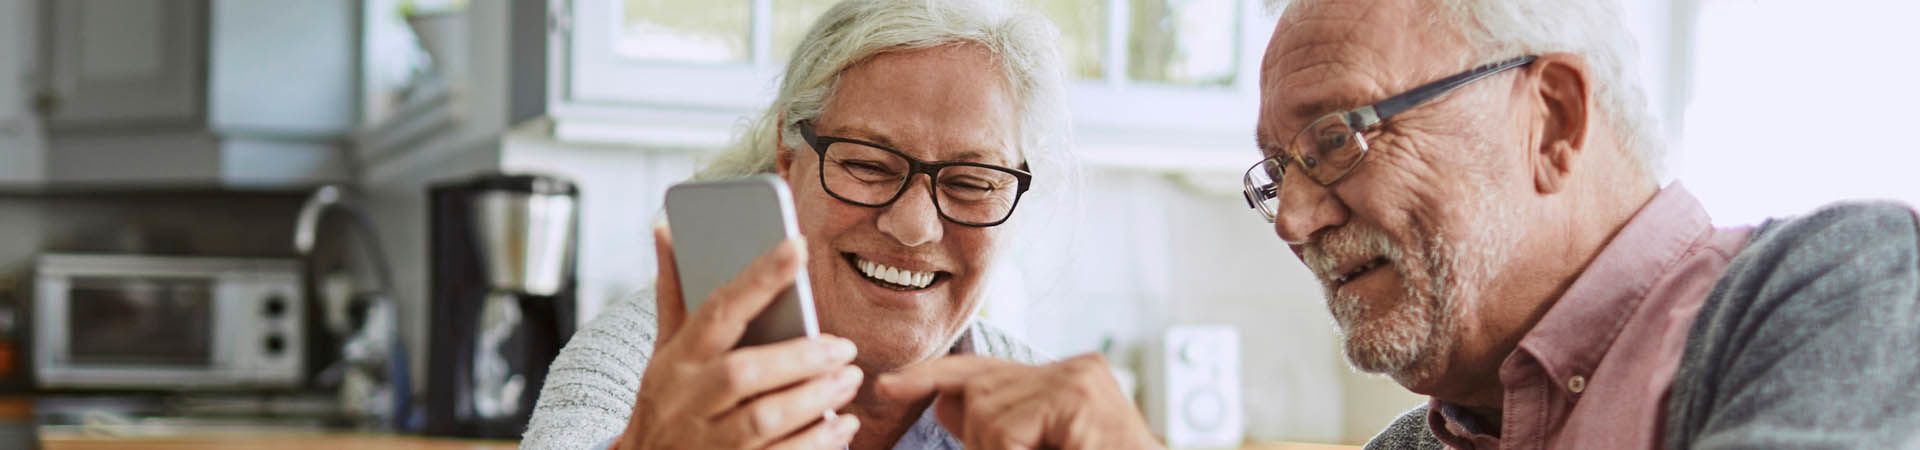 Senioren Smartphone – Ein älteres Pärchen bei einem Videotelefonat am Smartphone.